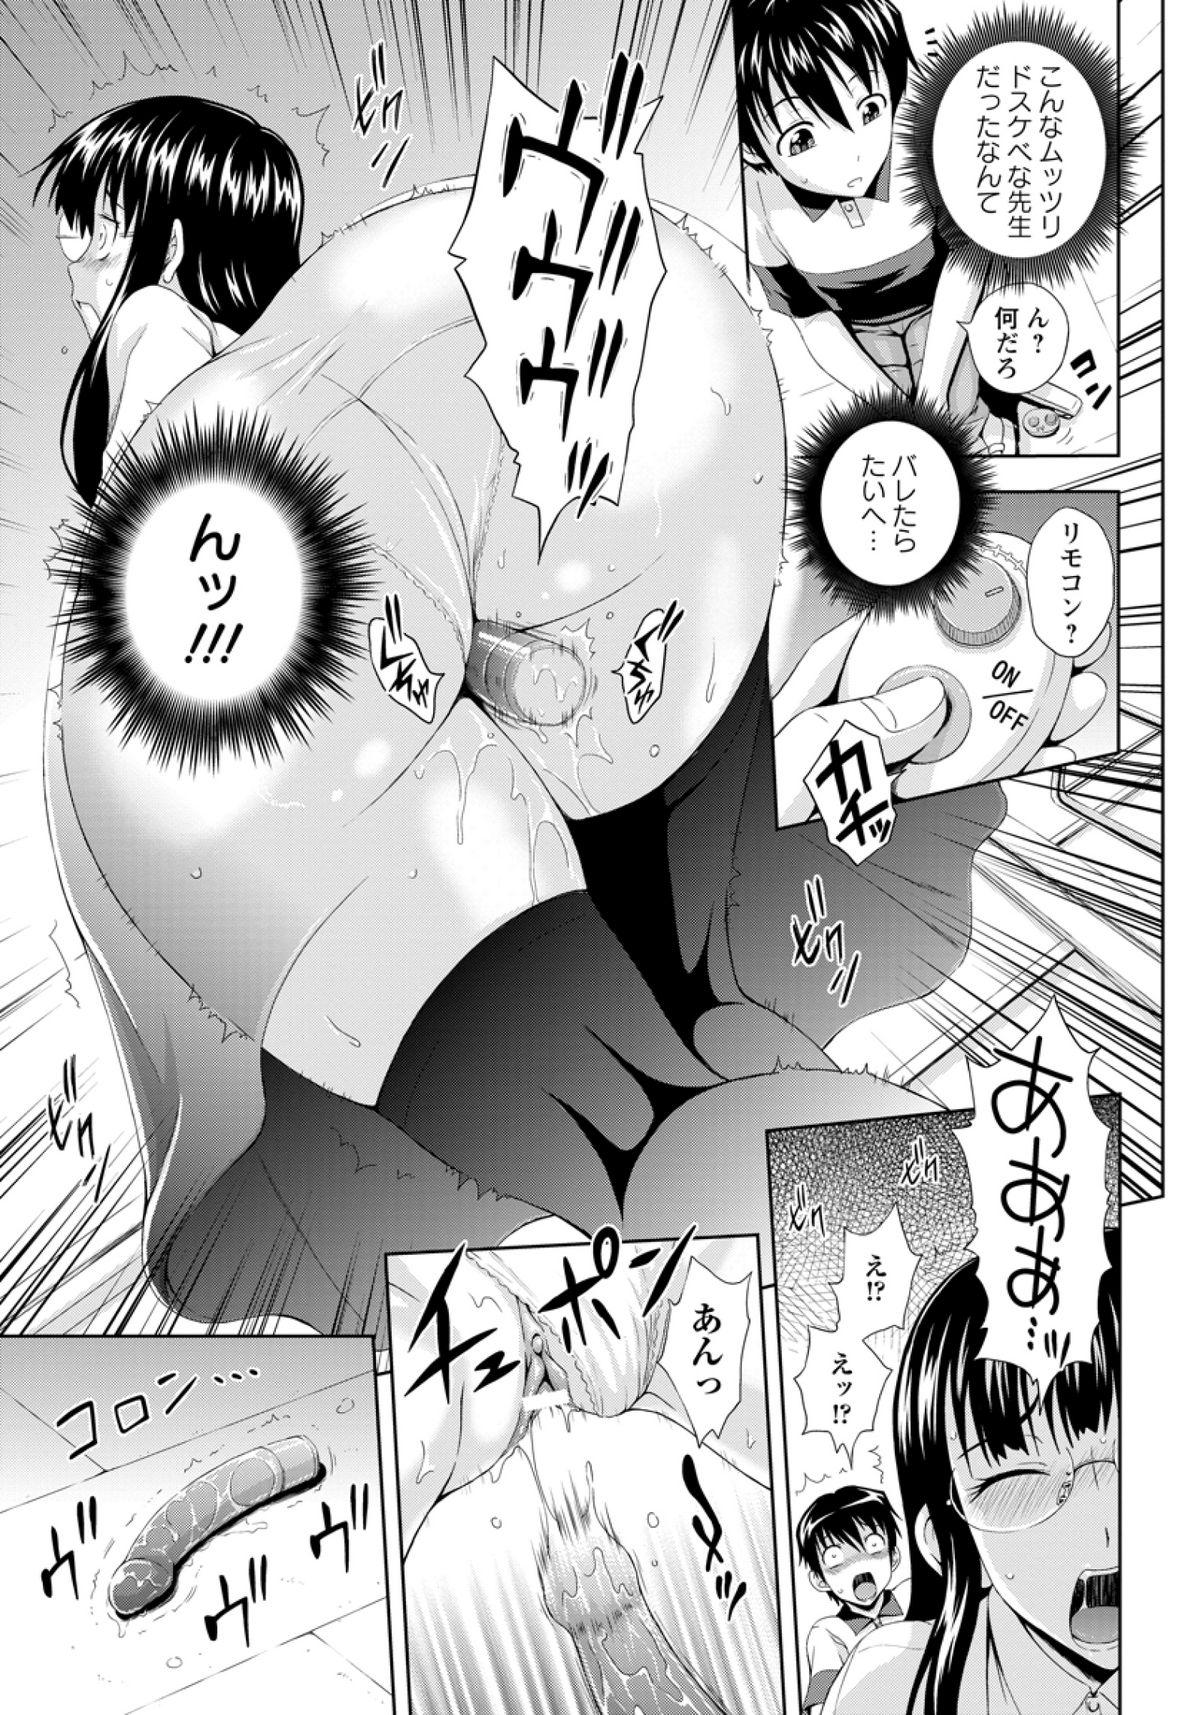 Tats Hoken no Kyoushitsu Desnuda - Page 3